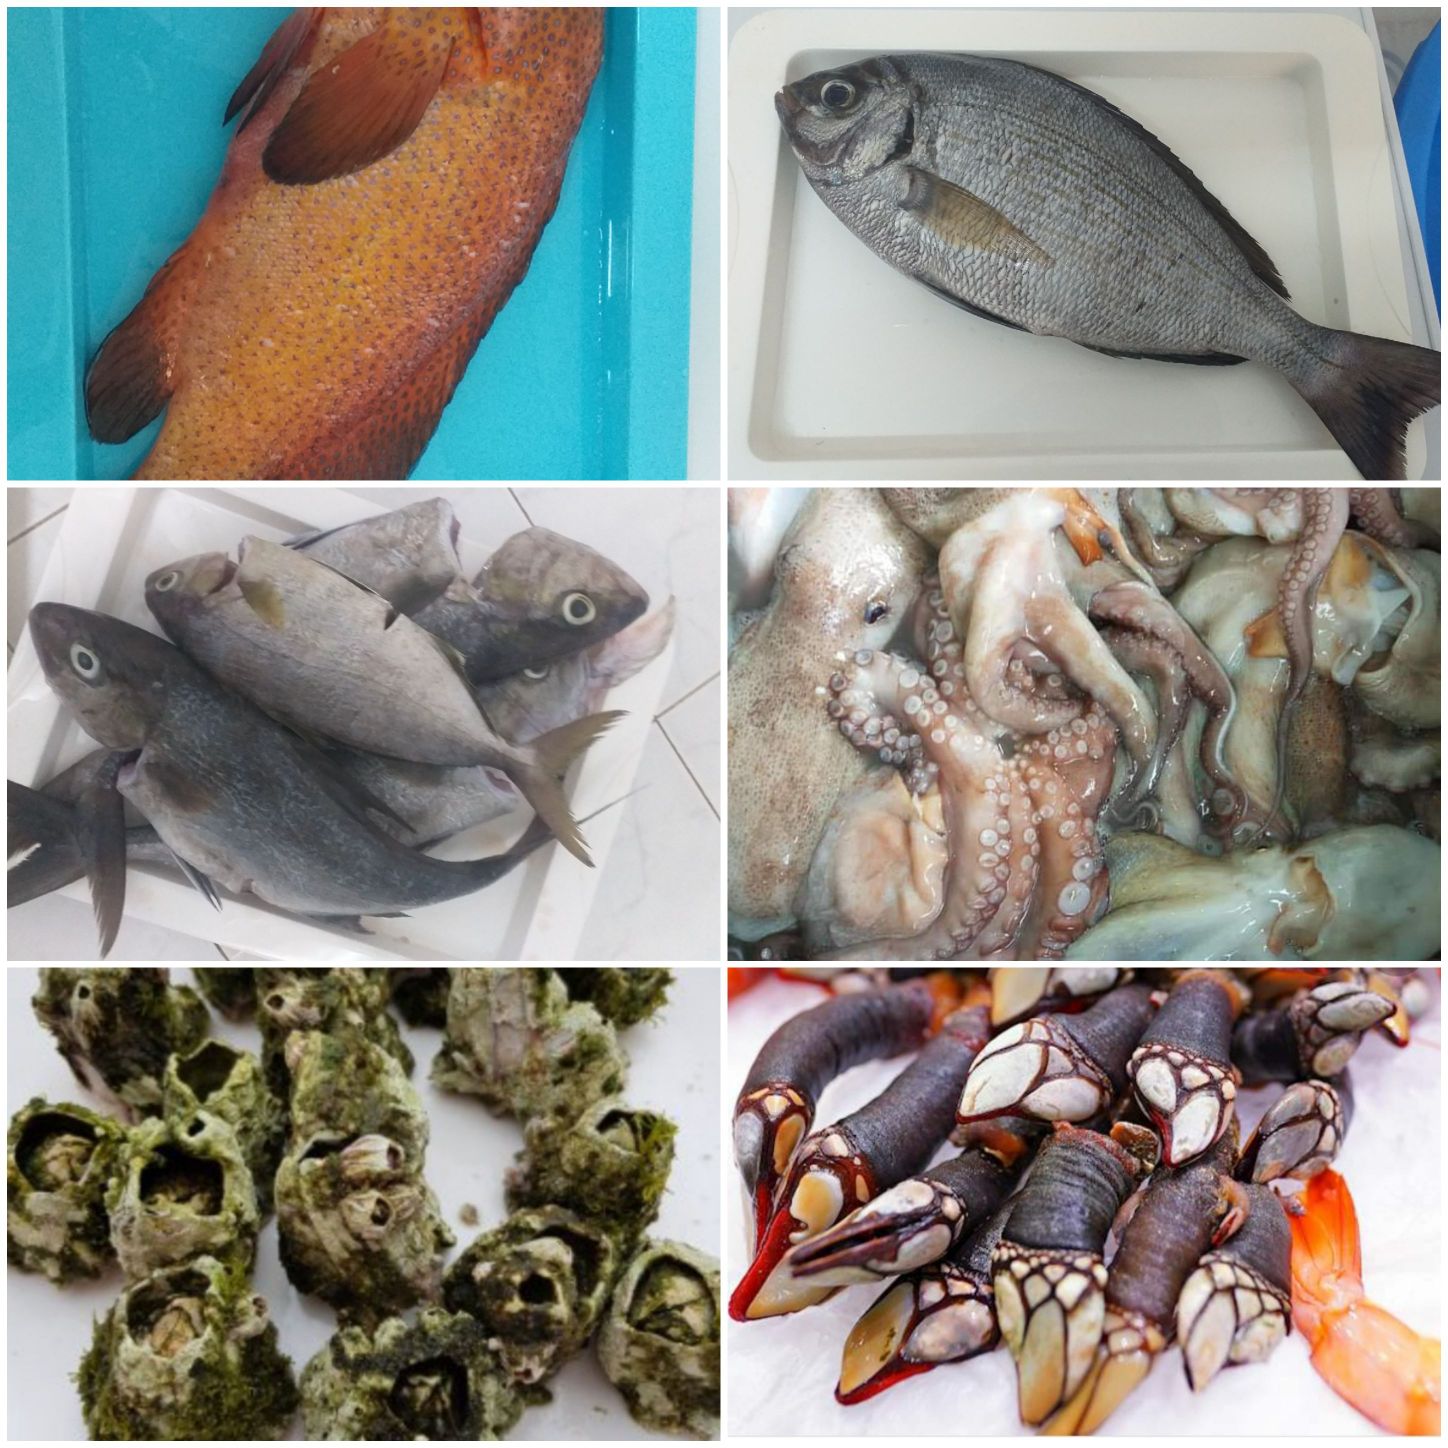 Escolhe Boutique de Peixe na compra do seu peixe porque aqui encontras a higene e a qualidade.🤗